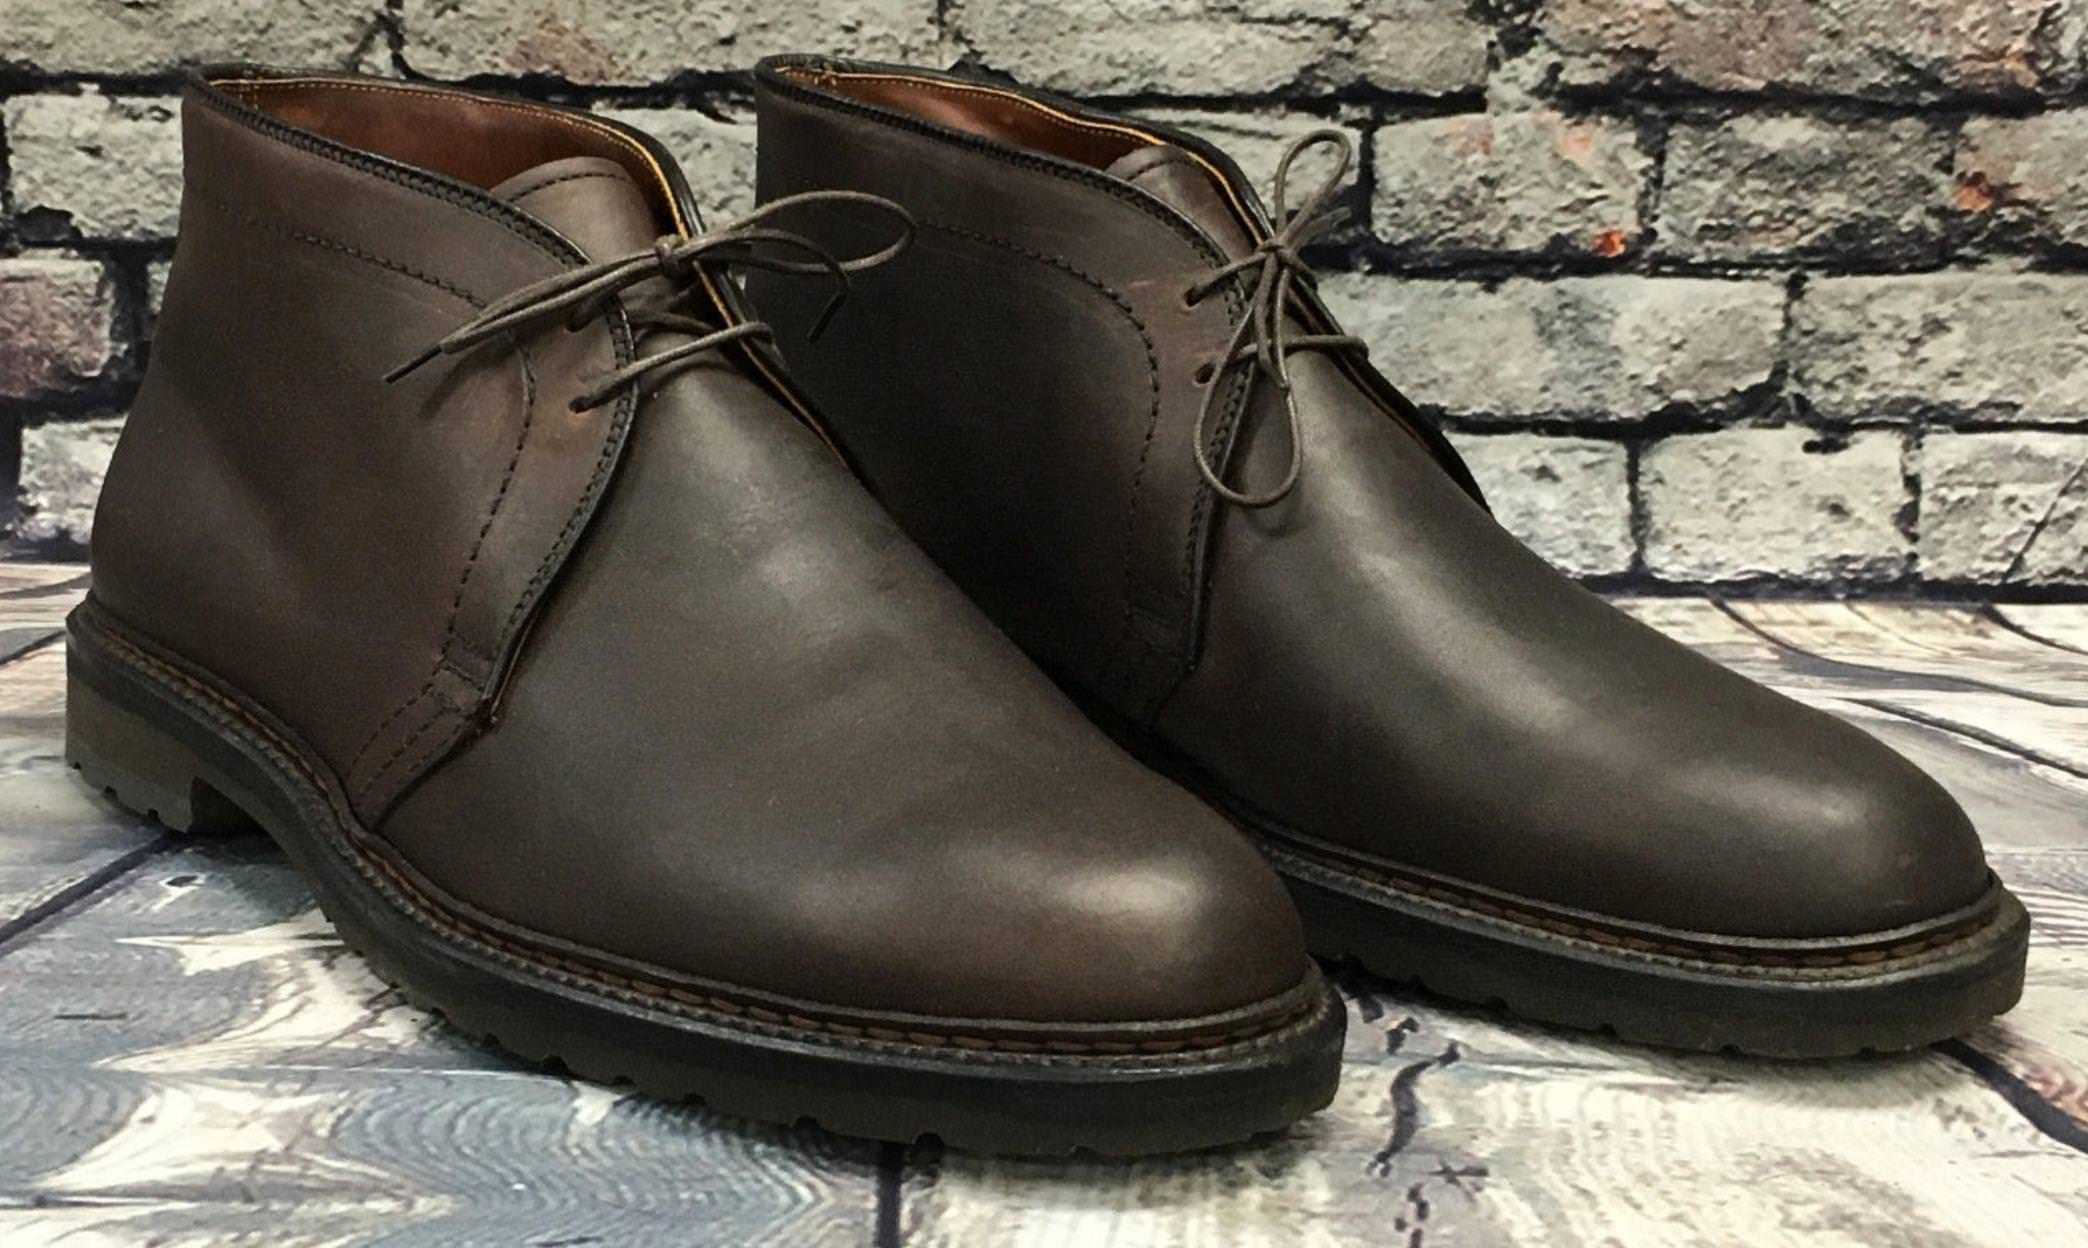 Дезерты это обувь – ботинки clarks desert boots и их отличие от originals, а также о муках выбора размера обуви и качестве мужских дезертов